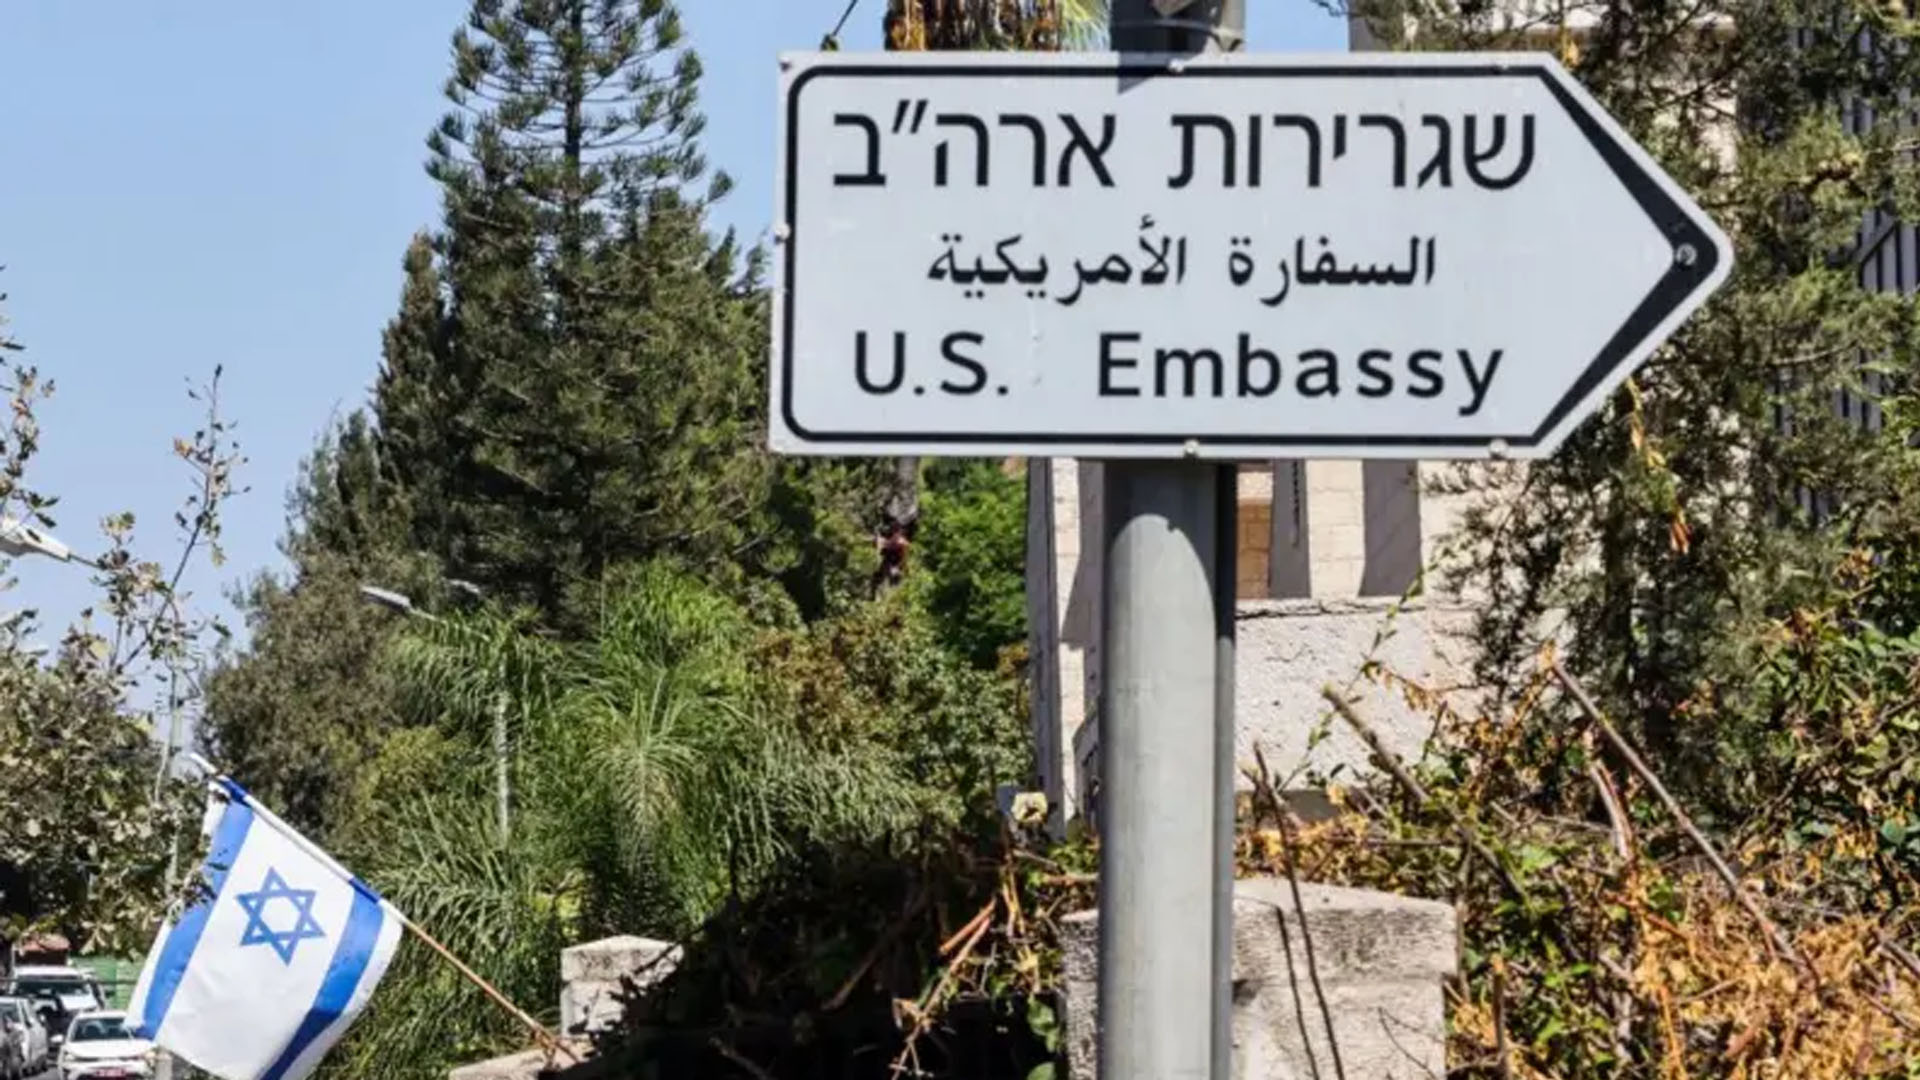 इजरायलस्थित आफ्नो दूतावसाका कर्मचारीलाई बाहिर ननिस्कन अमेरिकाको निर्देशन 